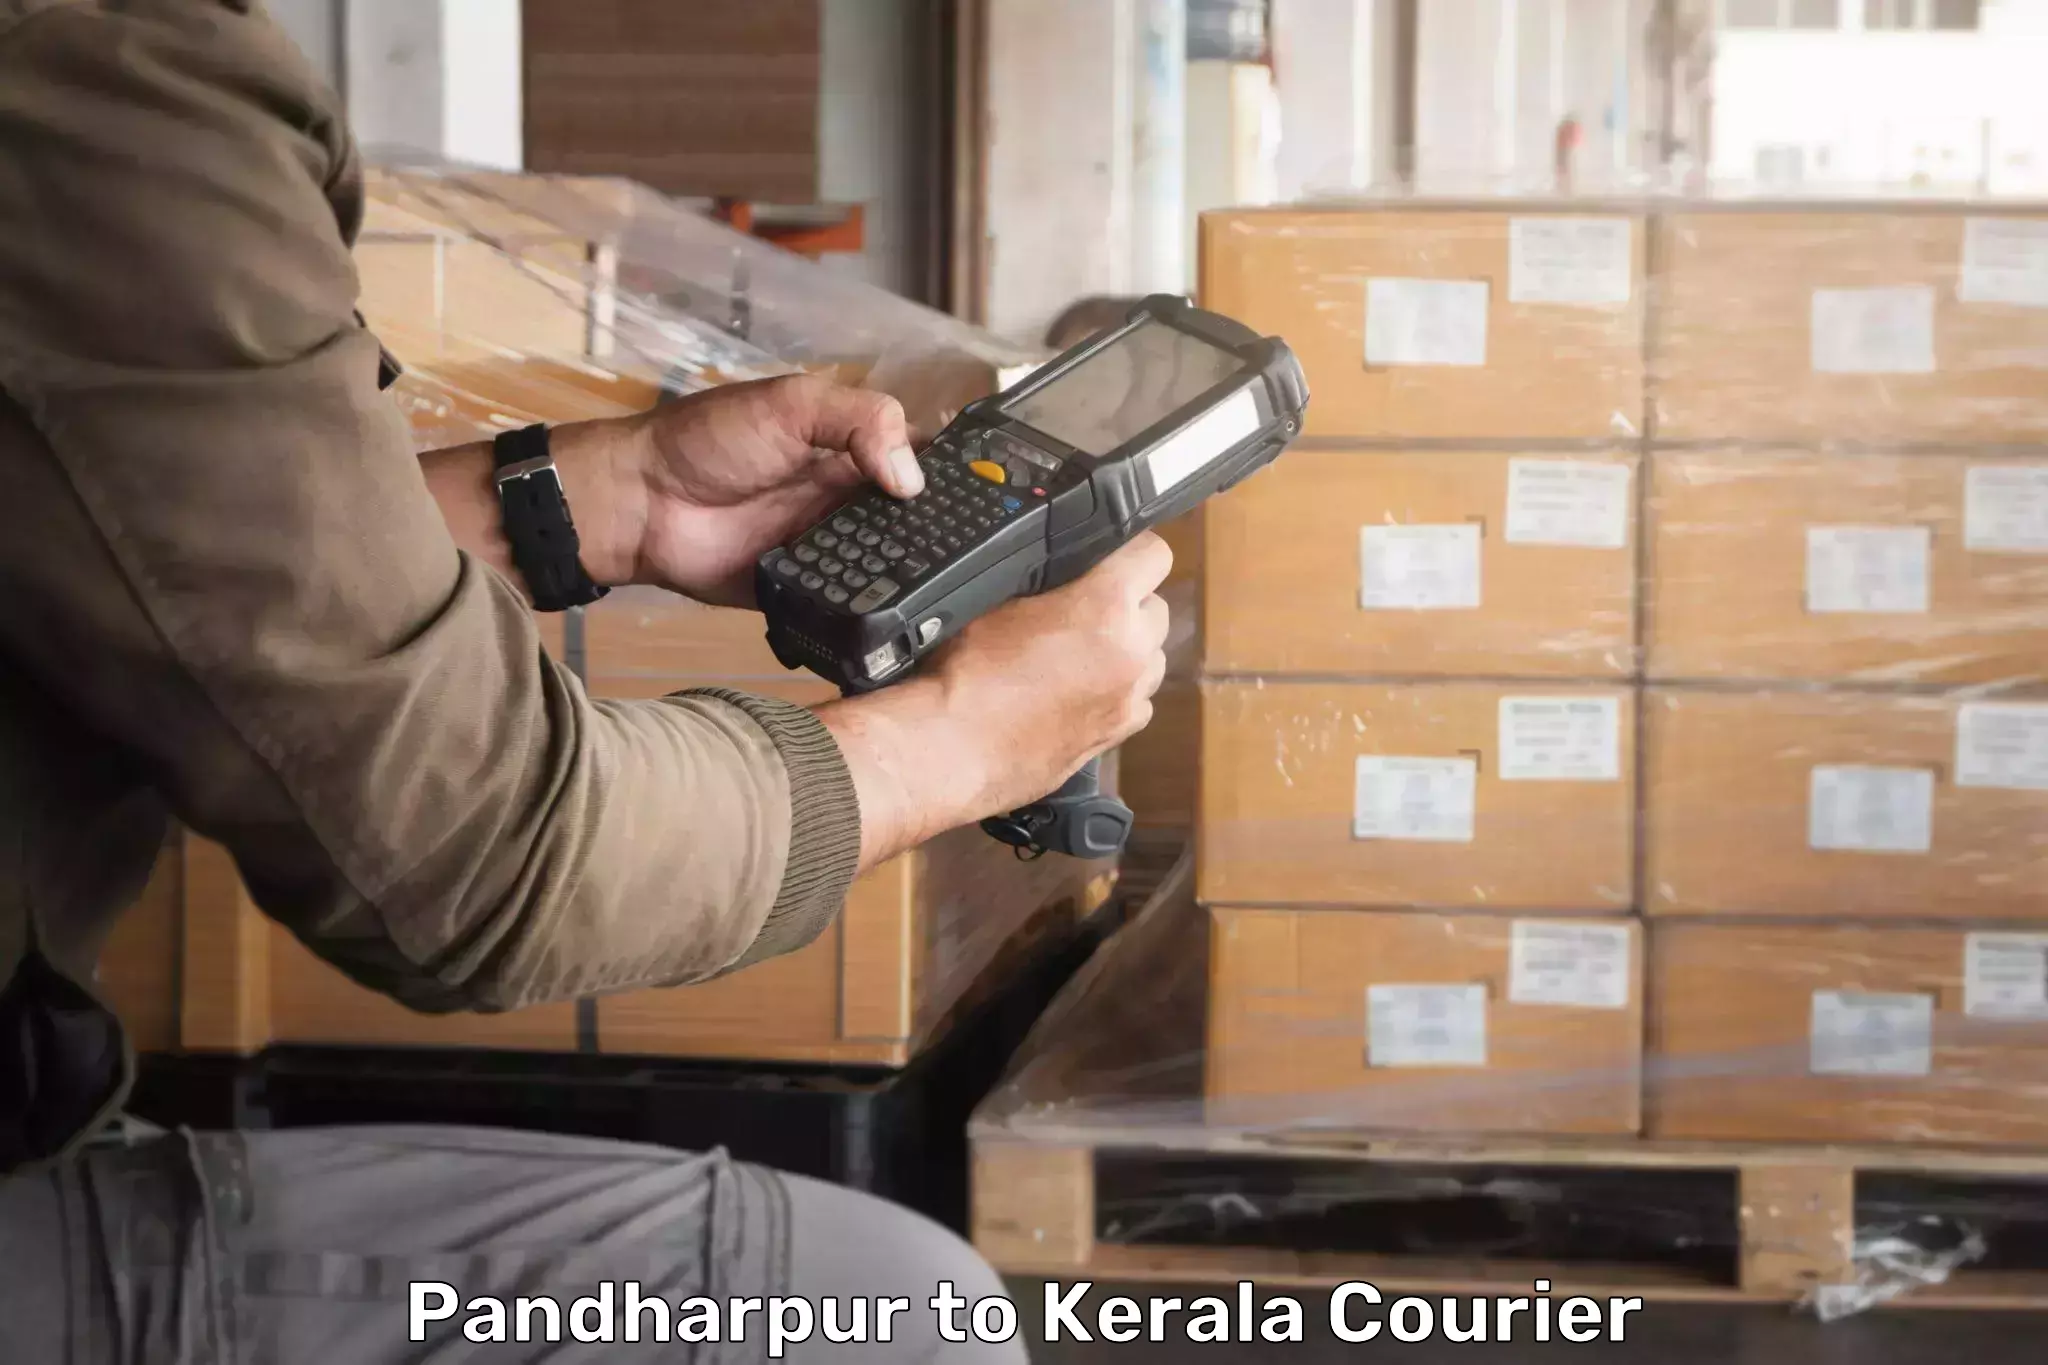 Expedited shipping methods Pandharpur to Kochi